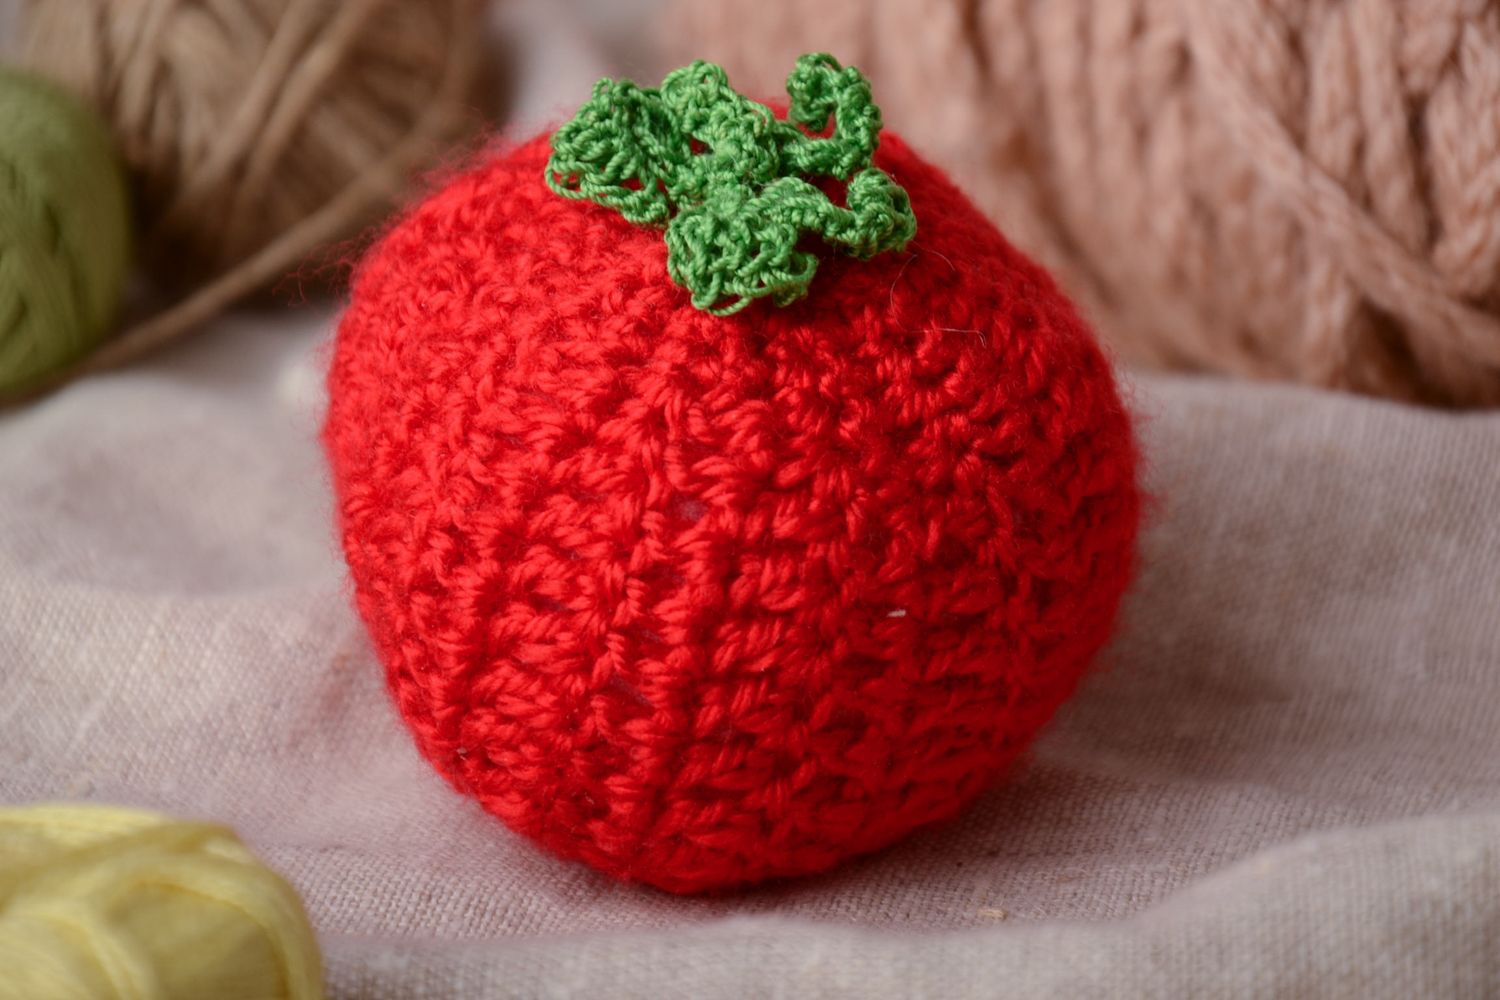 Soft crochet toy tomato photo 1